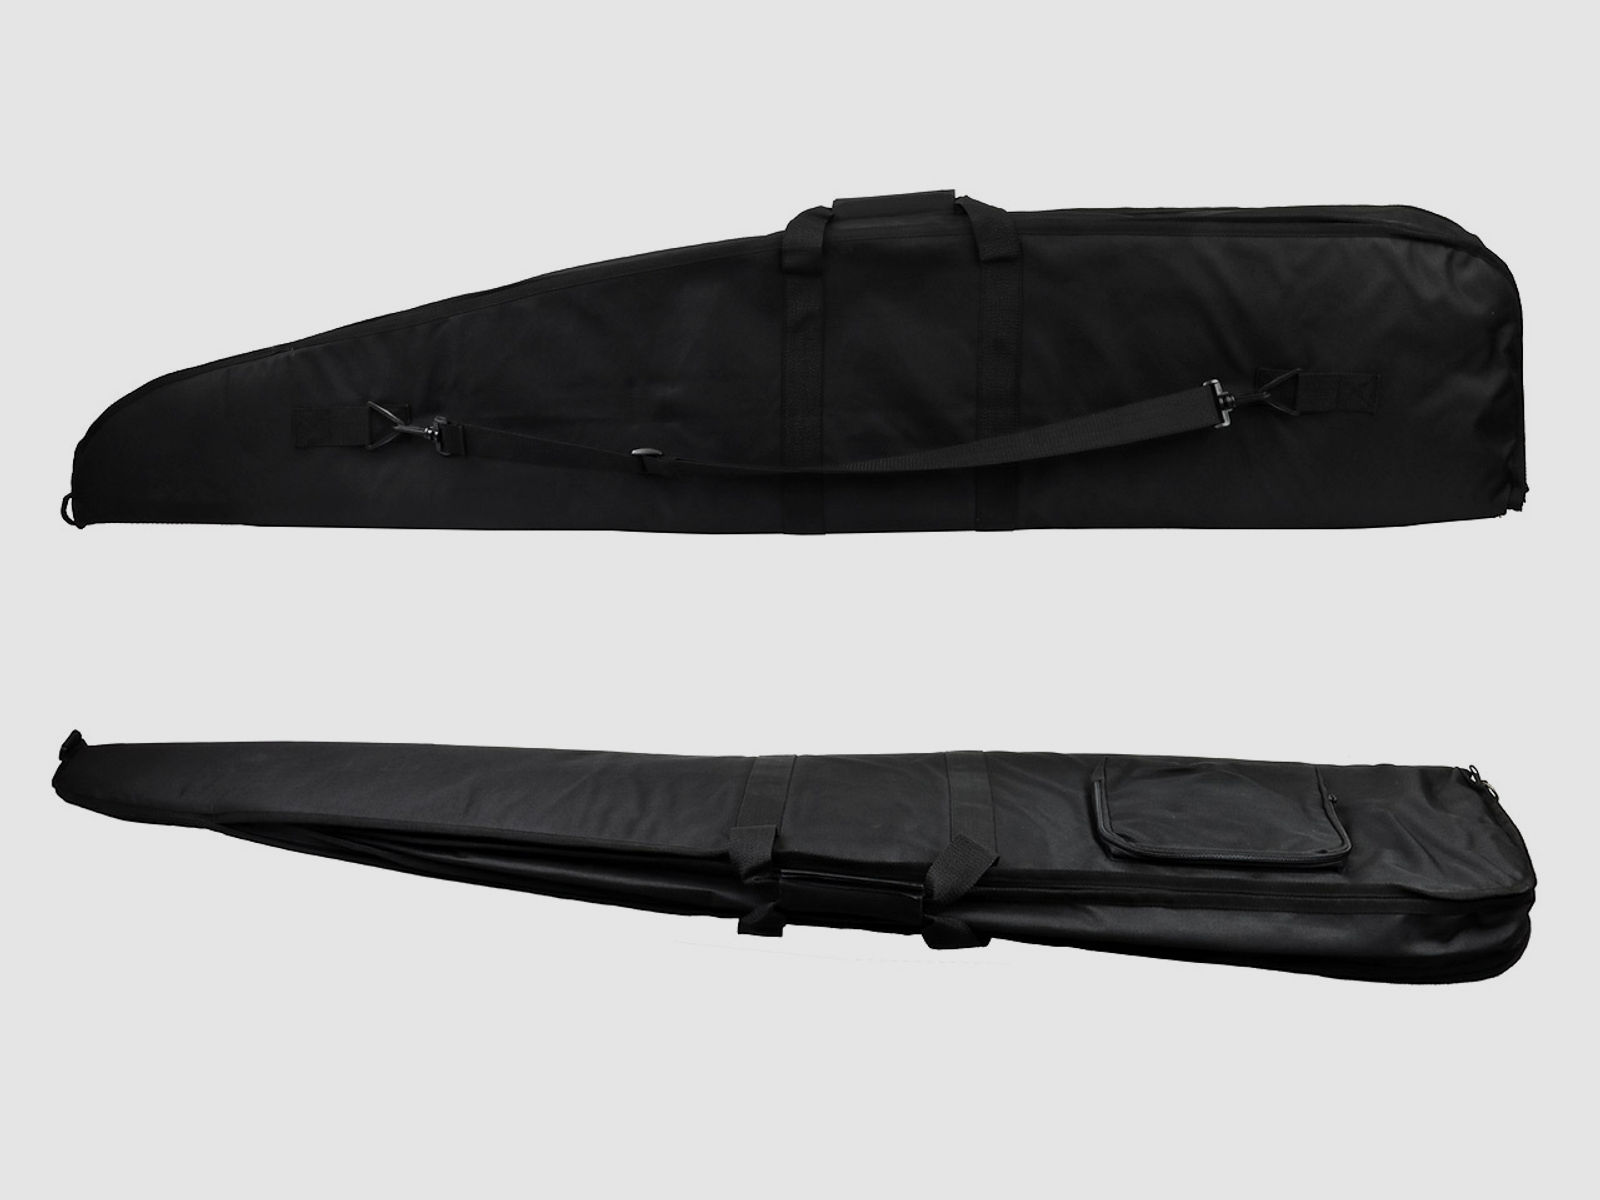 Doppel-Gewehrfutteral, schwarz, 130 x 25 cm, Polyester, fĂĽr zwei Gewehre, mit Tragegurt und AuĂźentasche